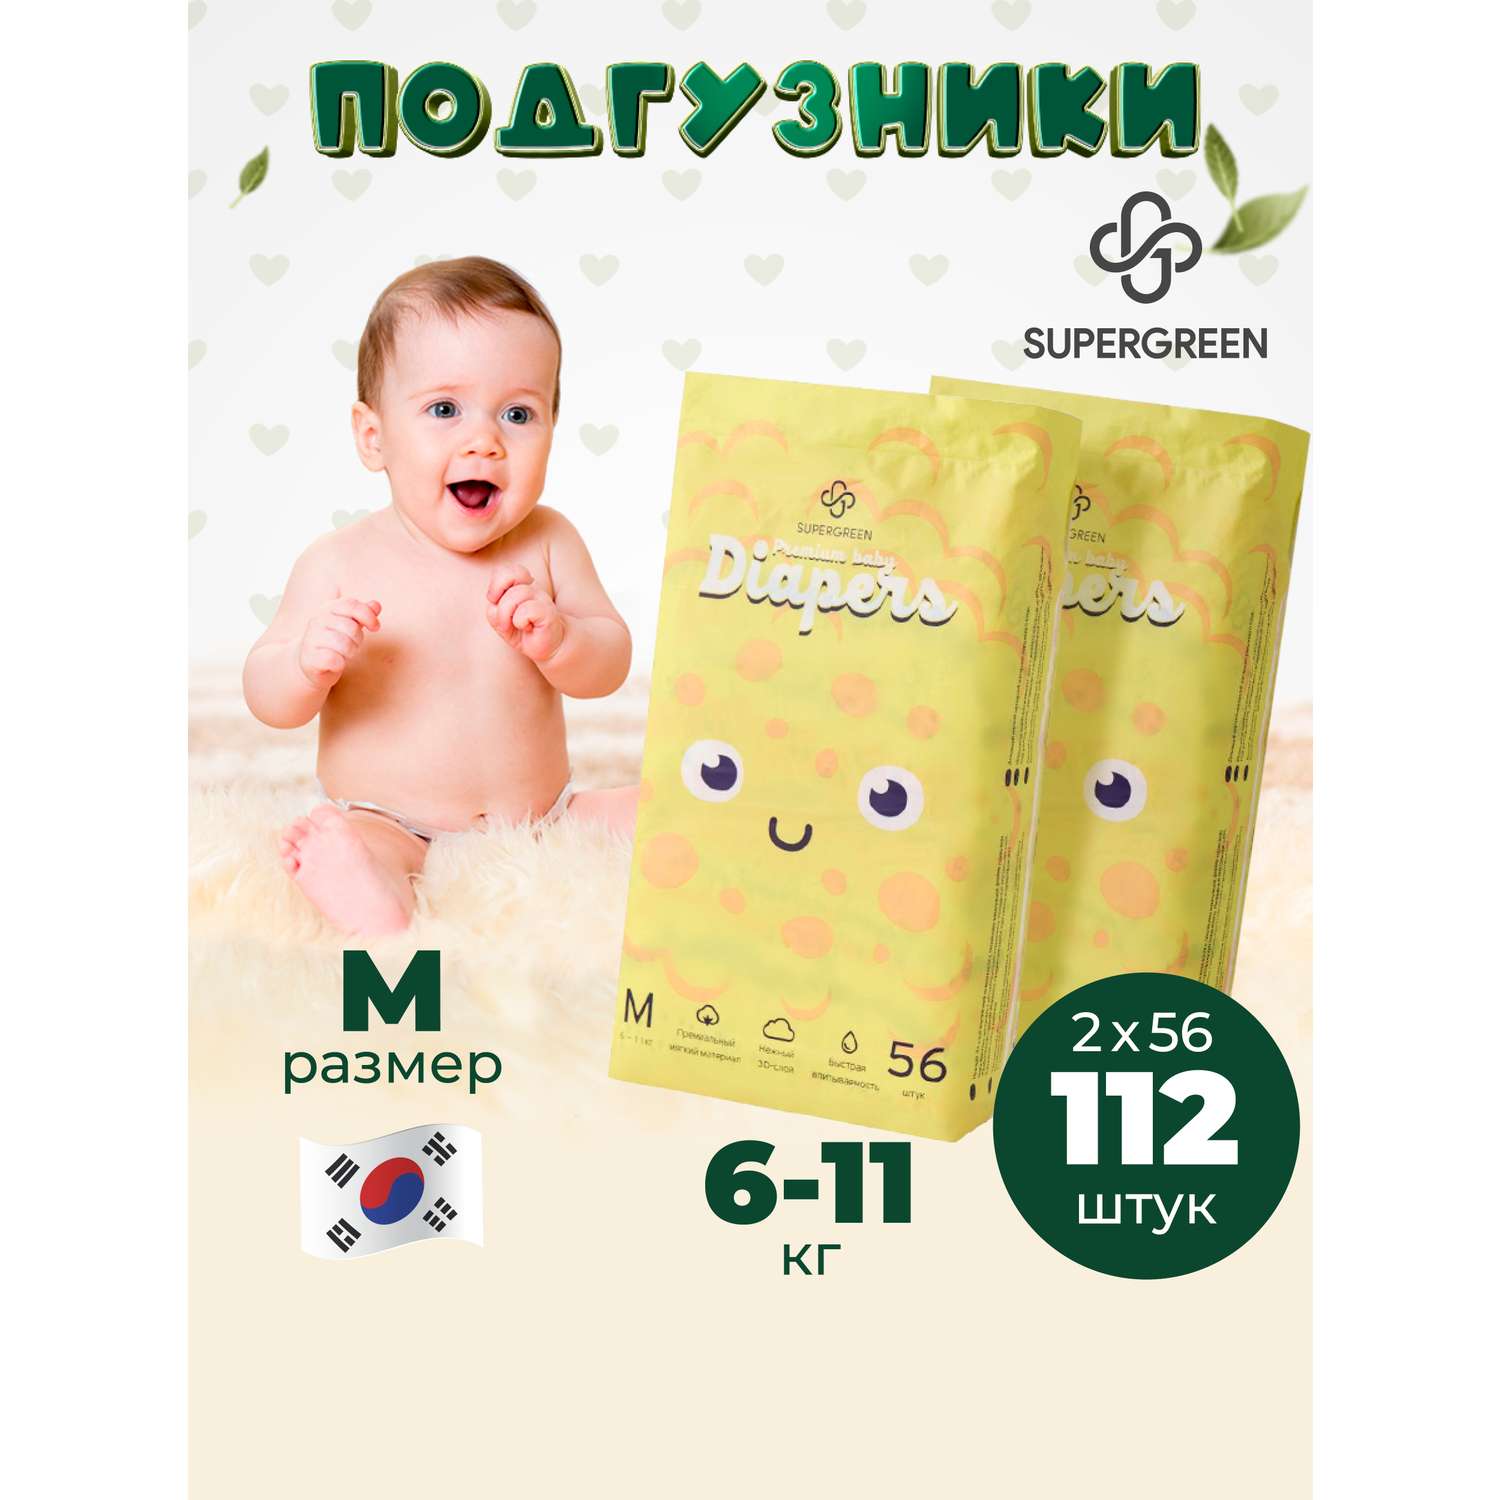 Подгузники SUPERGREEN Premium baby Diapers M размер 2 упаковки по 56 шт 6-11 кг ультрамягкие - фото 1